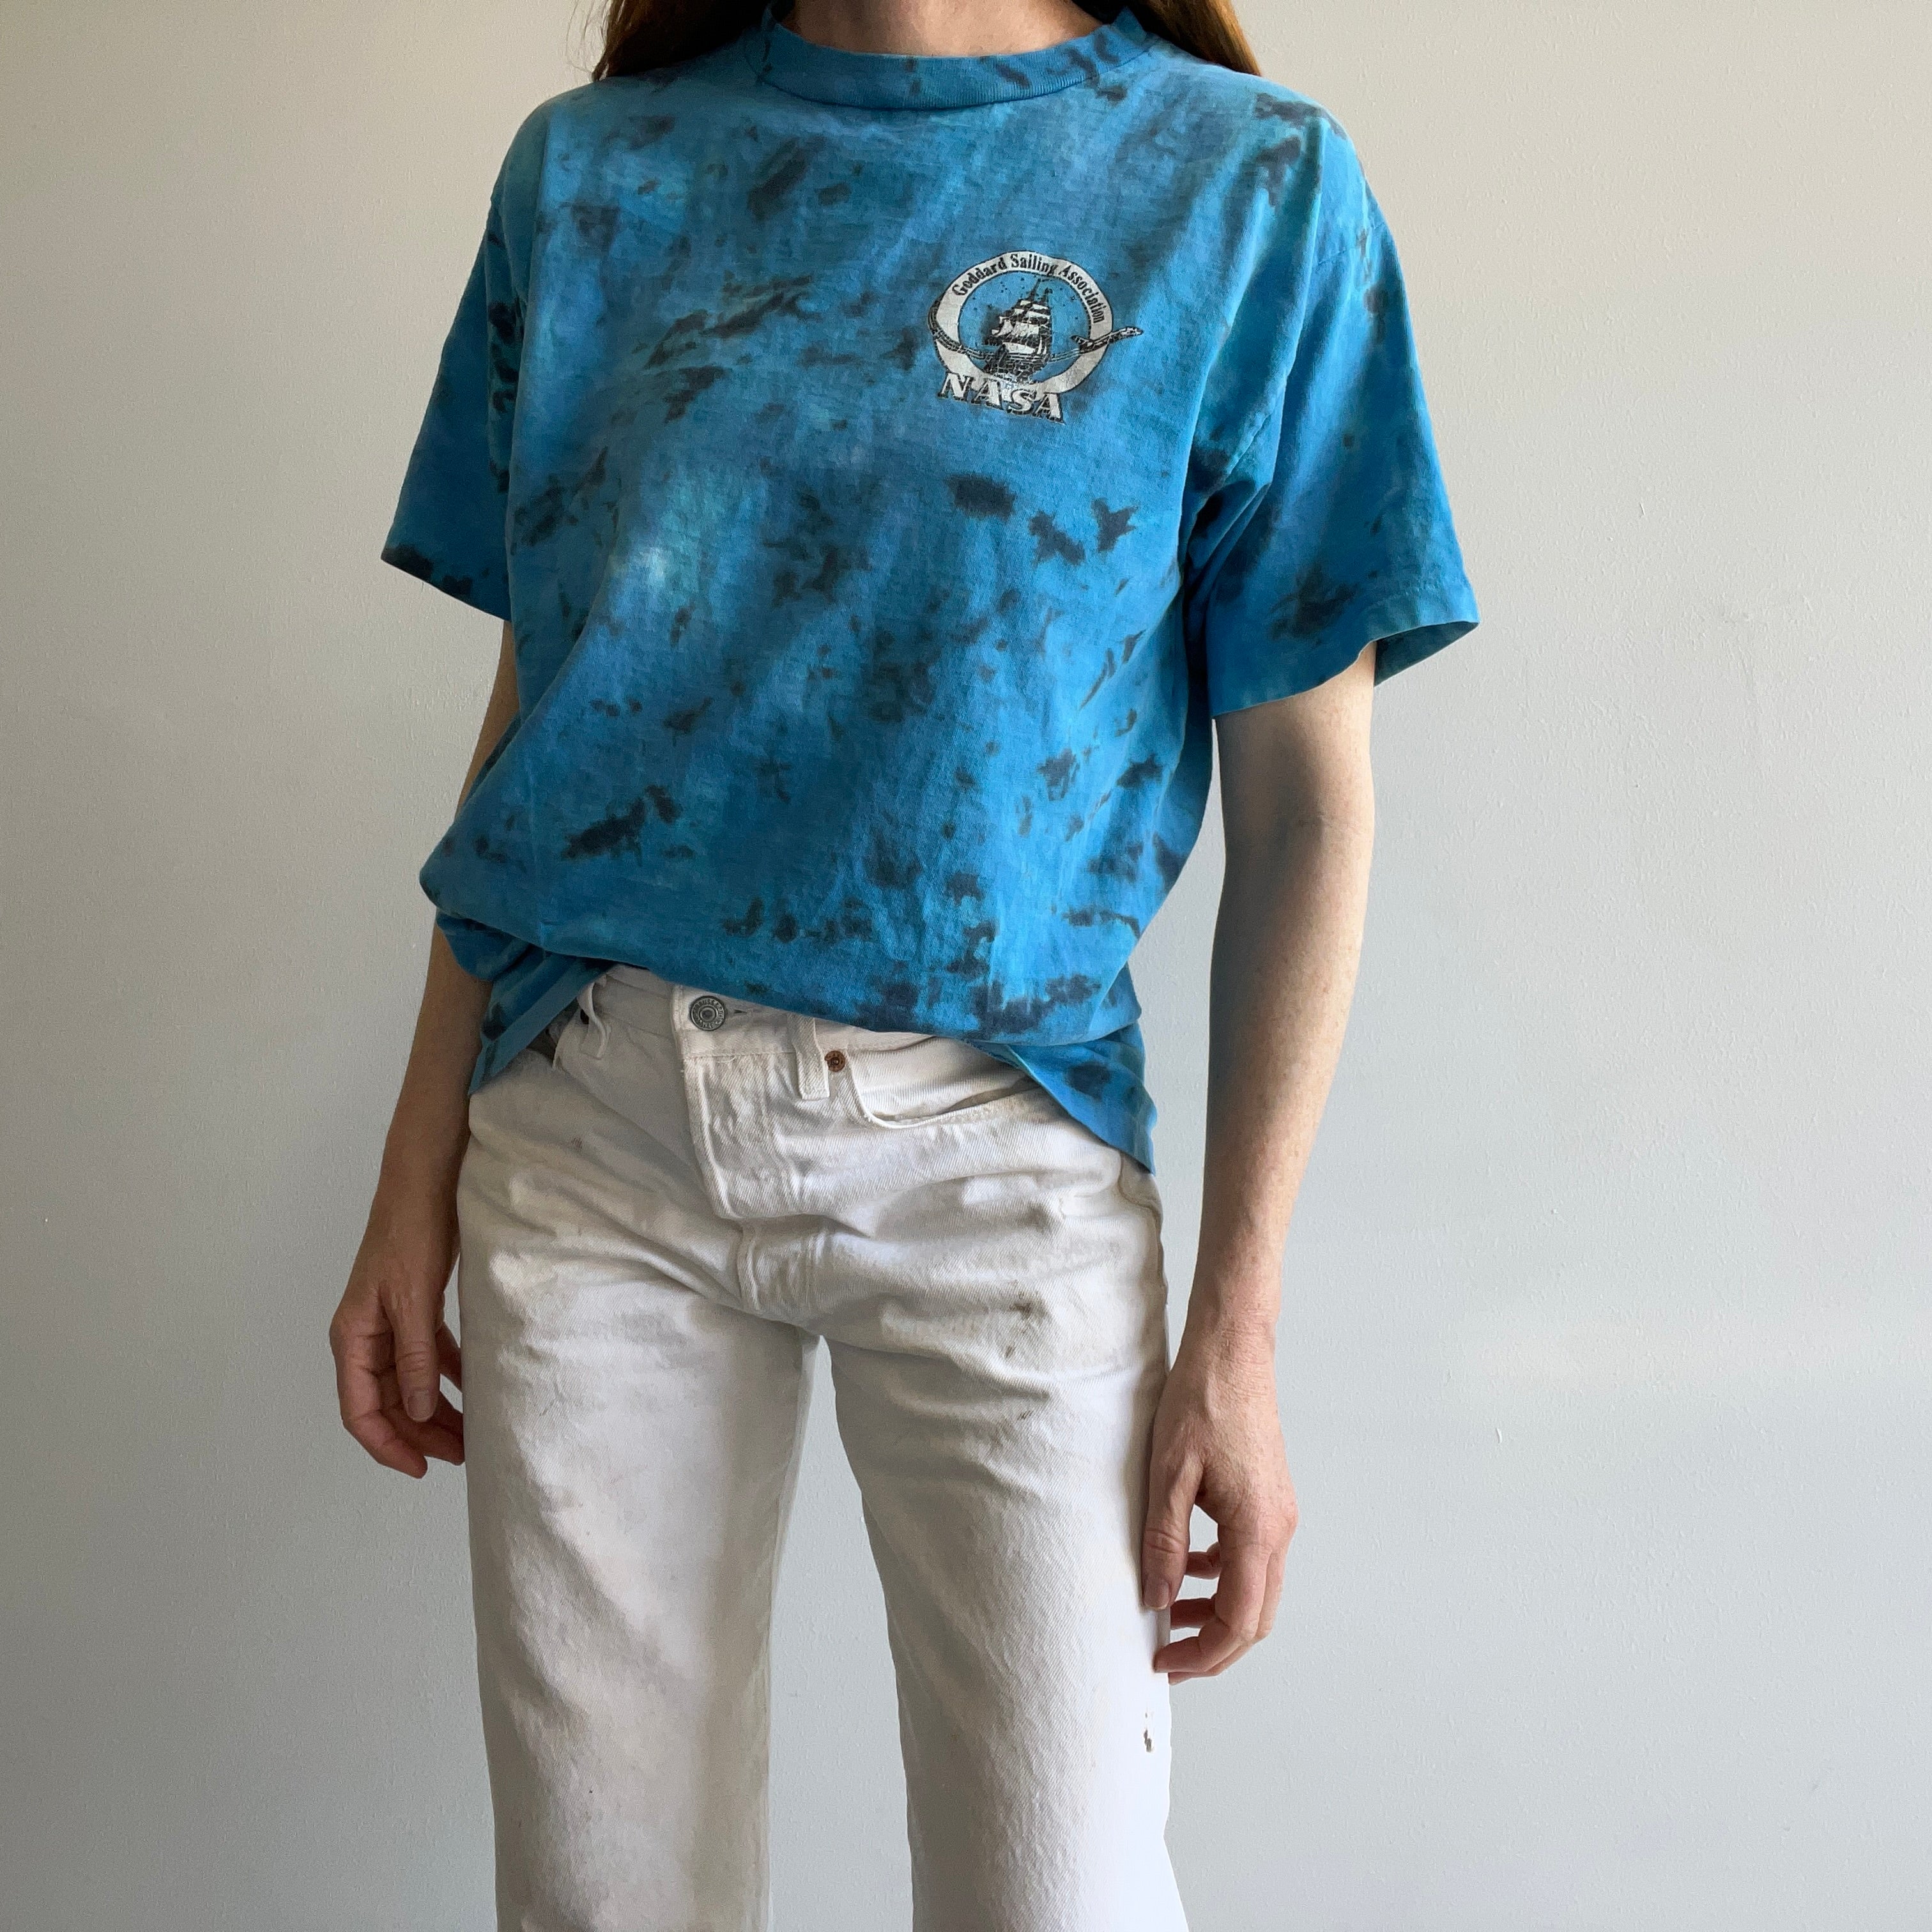 1980s Goddard Sailing Assoc - NASA - Tie Dye T-Shirt by Sun Dog